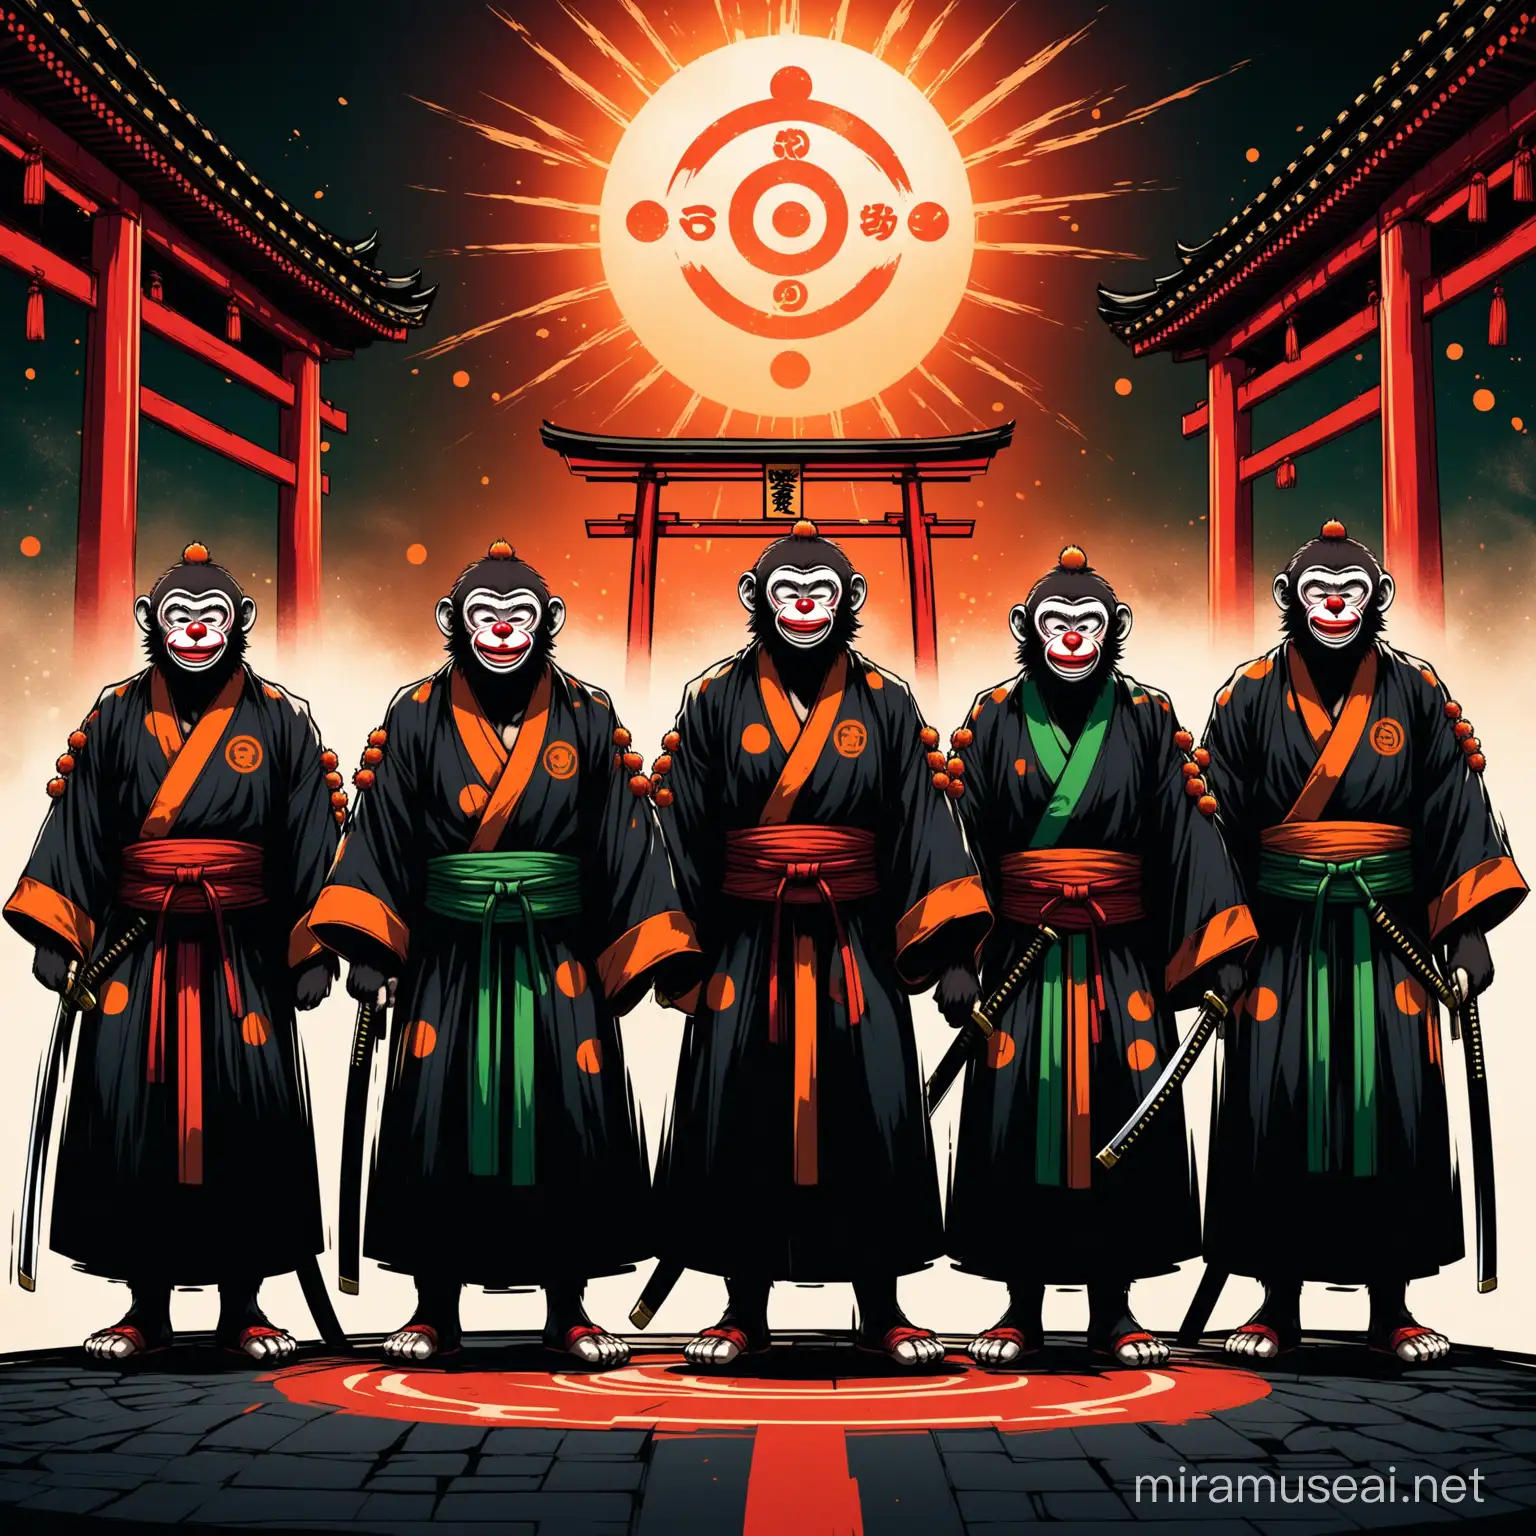 Clown-Monkey Group
appreance-noir/green lines/ ninja-attire/katana-runes/noir white/orange//full body/nlue hair/
background-noir red/temple/buddha//sun